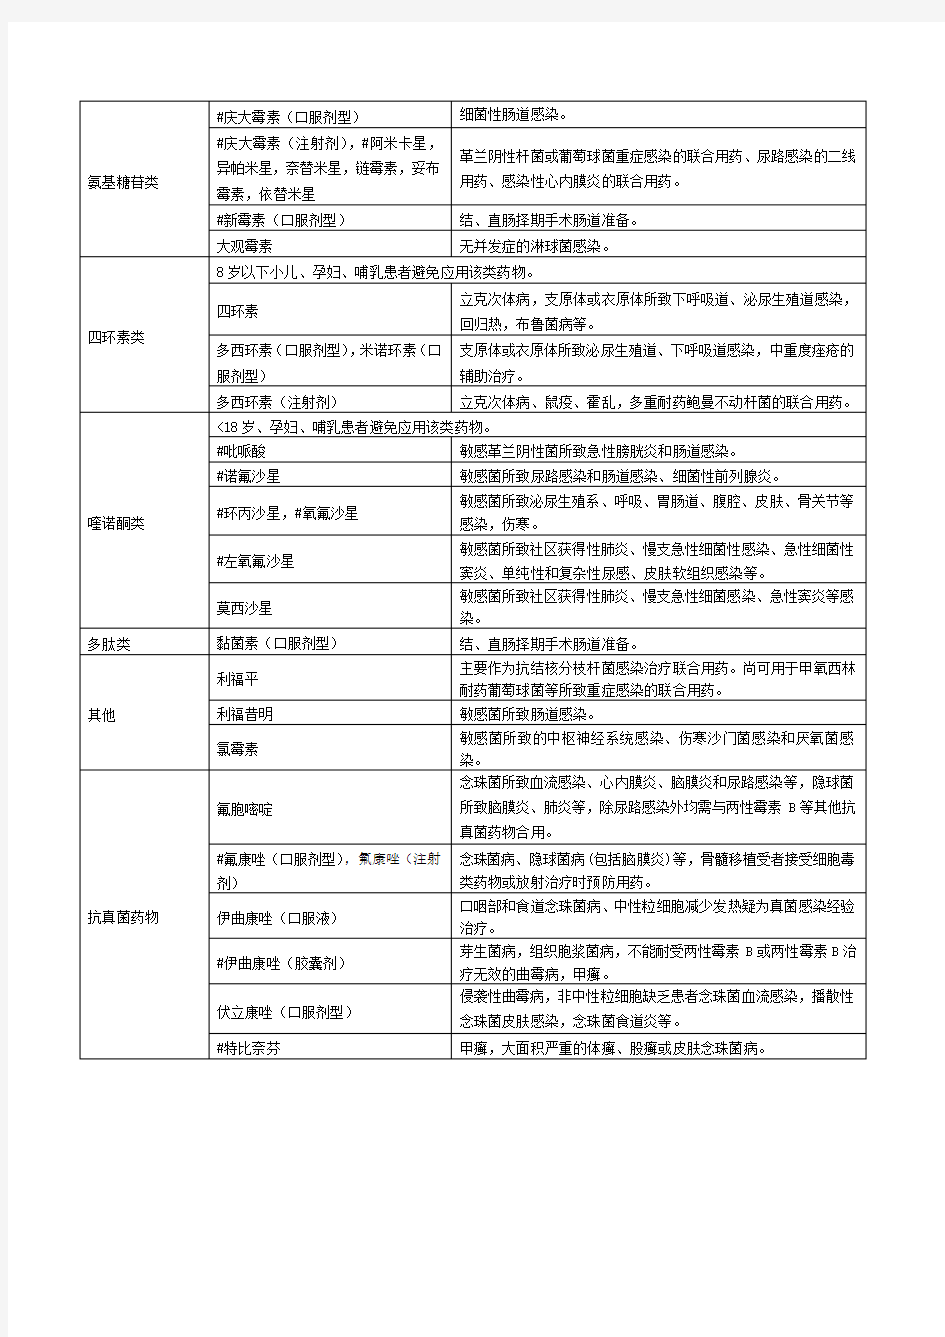 上海市抗菌药物临床应用分级管理目录(2012年版)